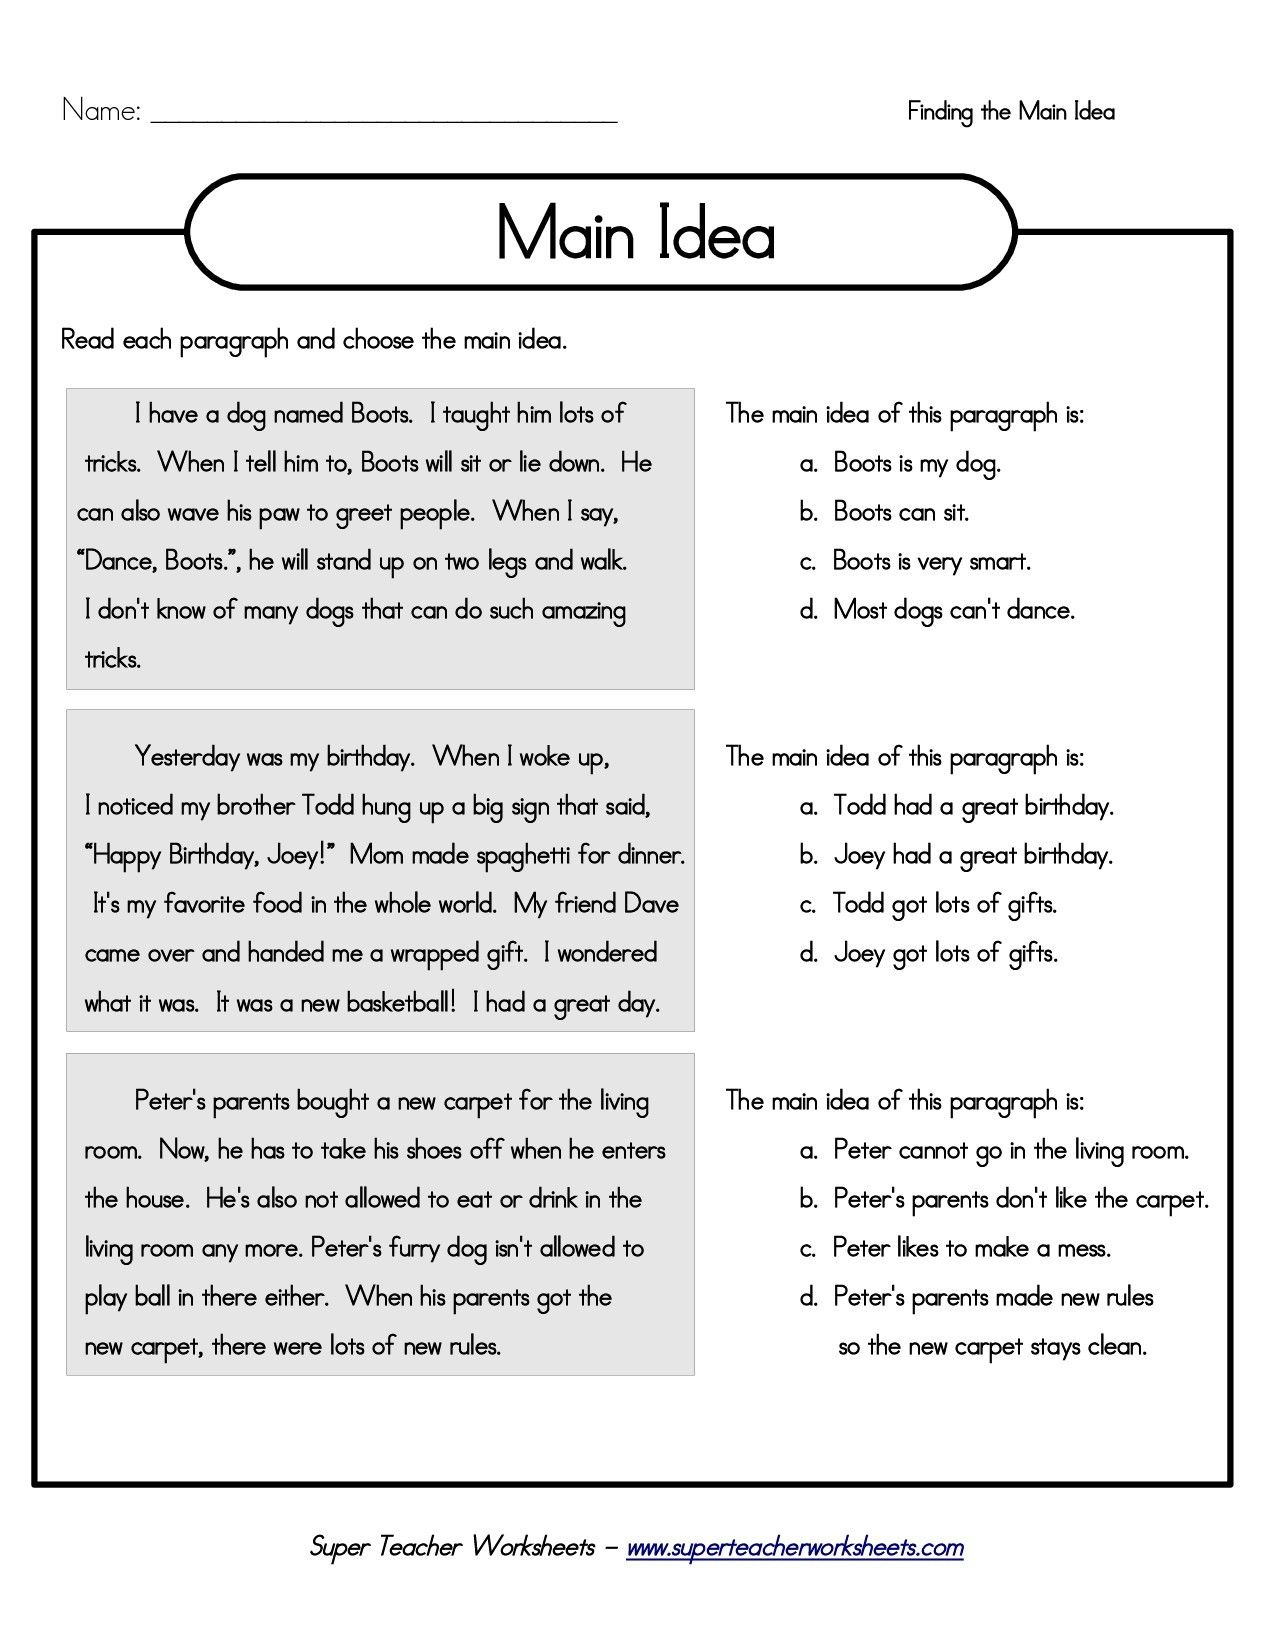 Printable 5Th Grade Main Idea Worksheets | Main Idea And Details - Free Printable Main Idea Graphic Organizer